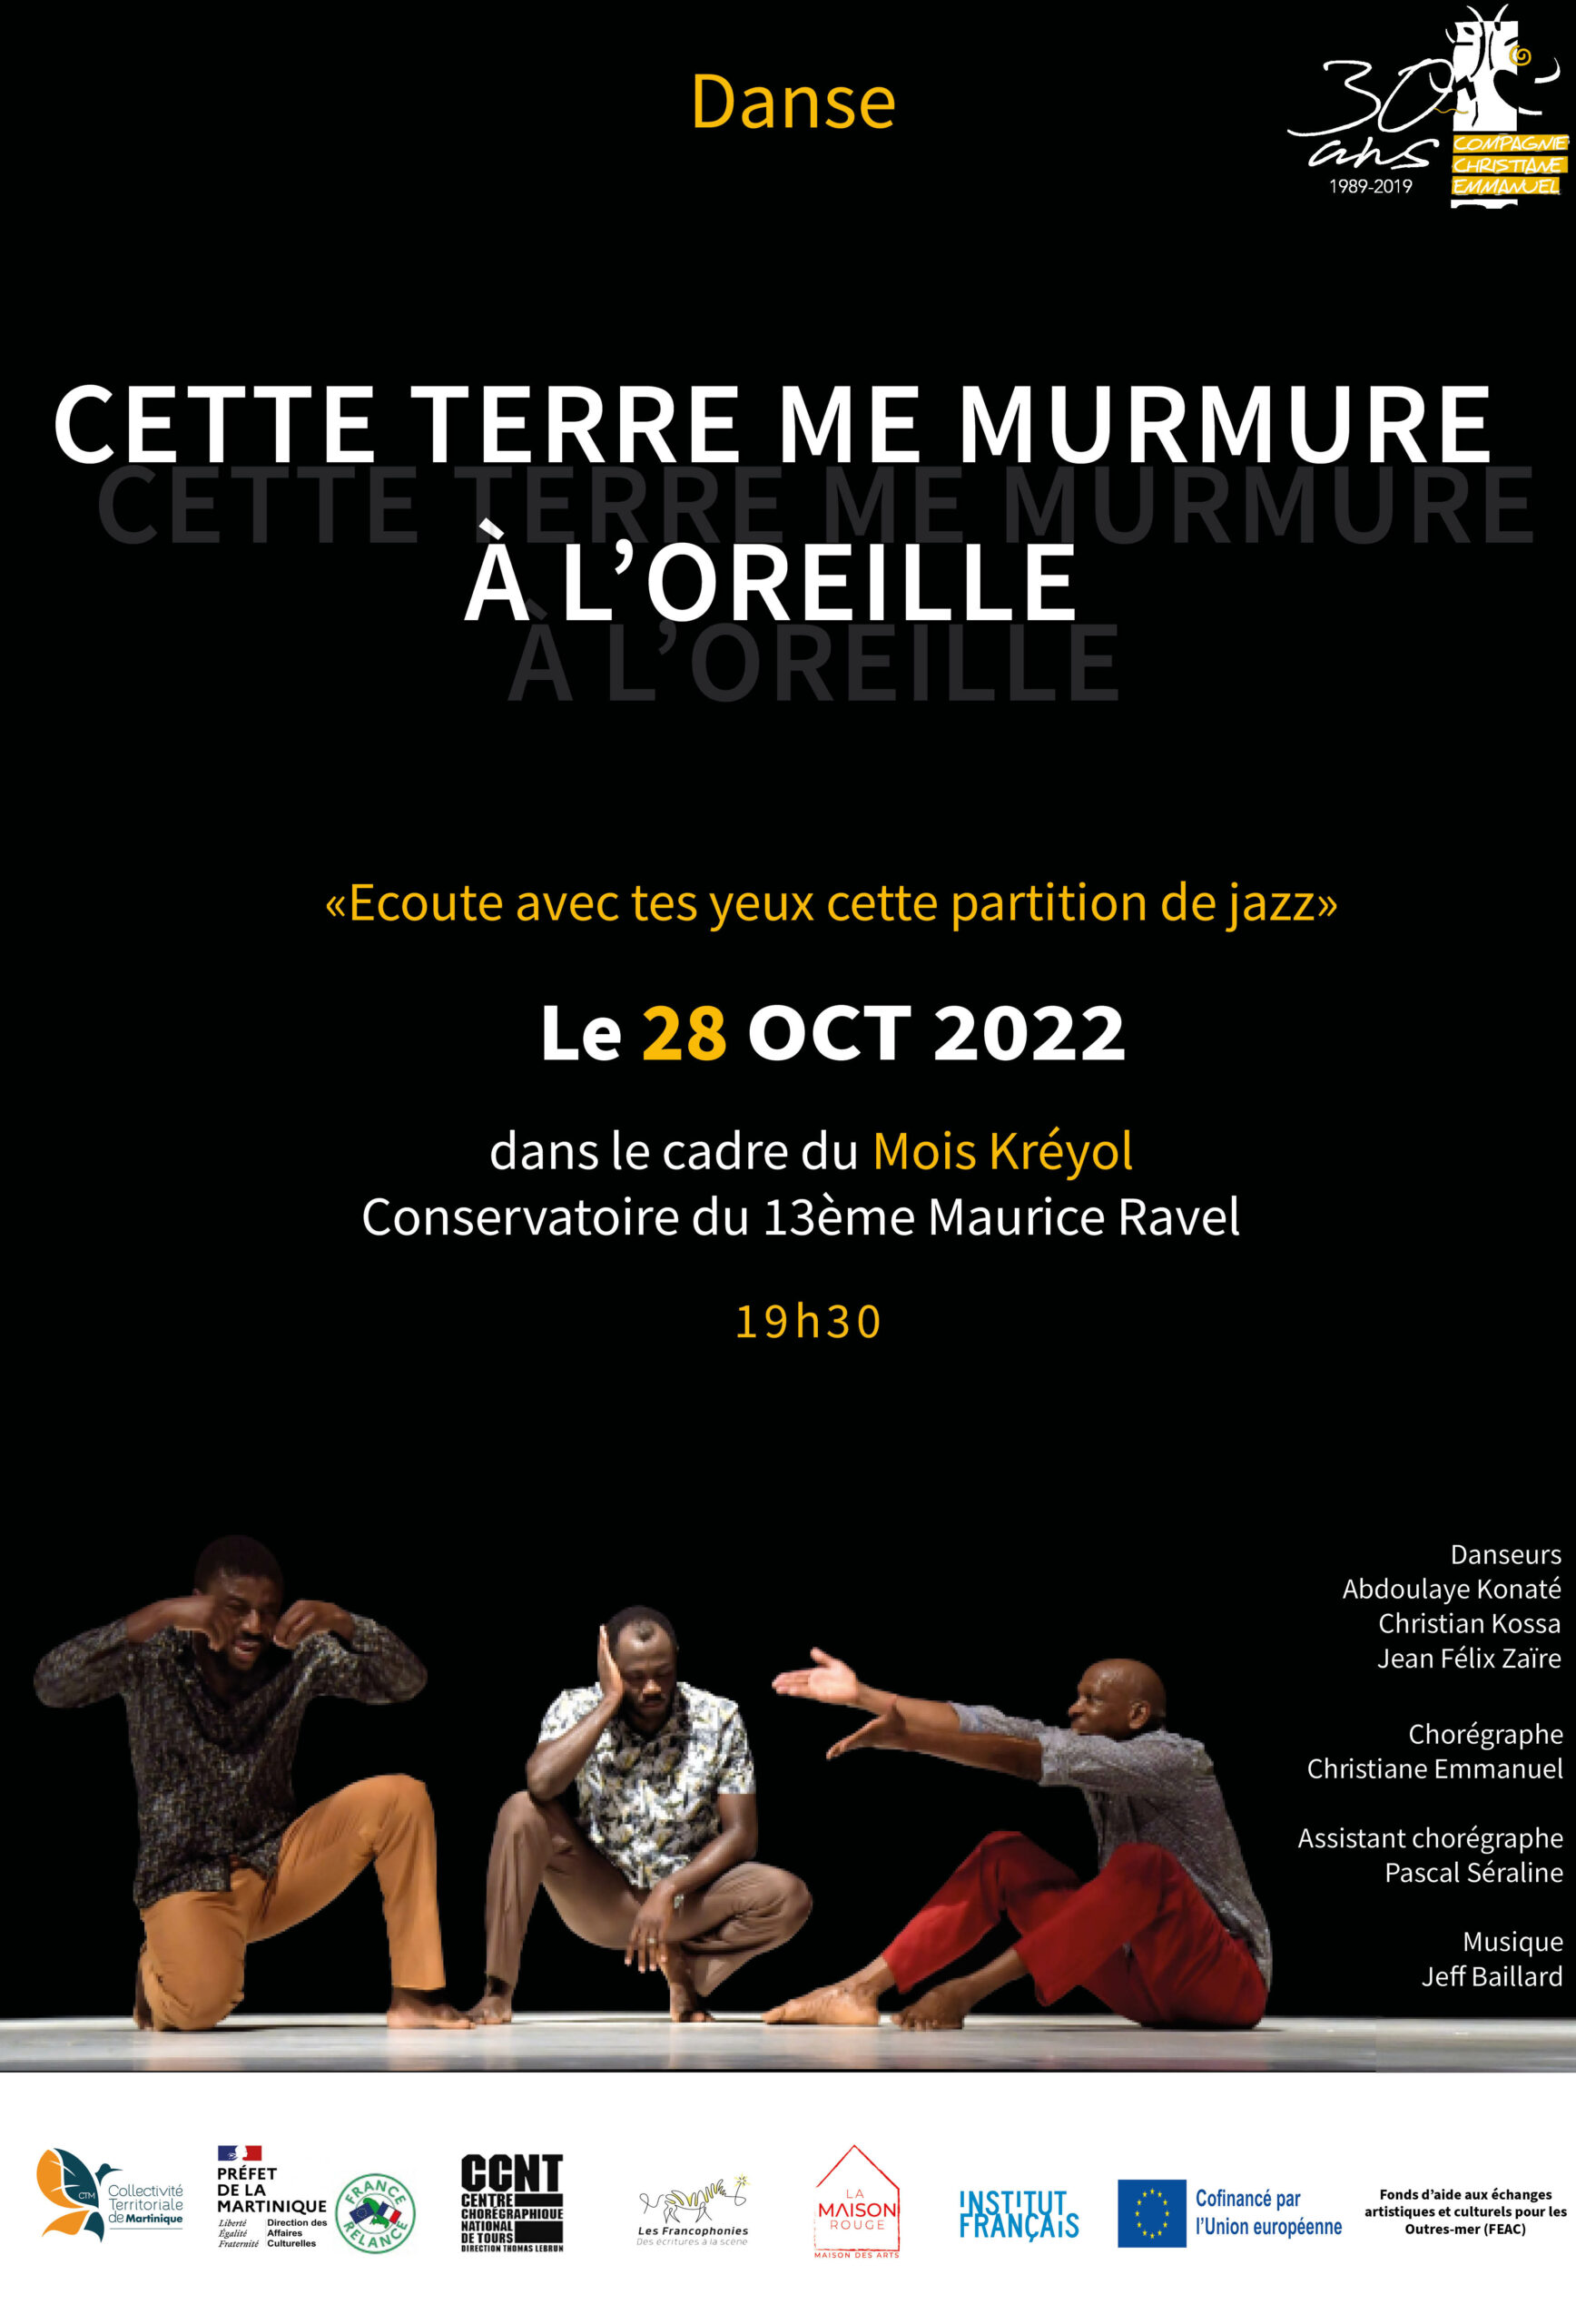 La Compagnie Christiane Emmanuel en représentation dans le cadre du Mois Kréyol le 28 octobre